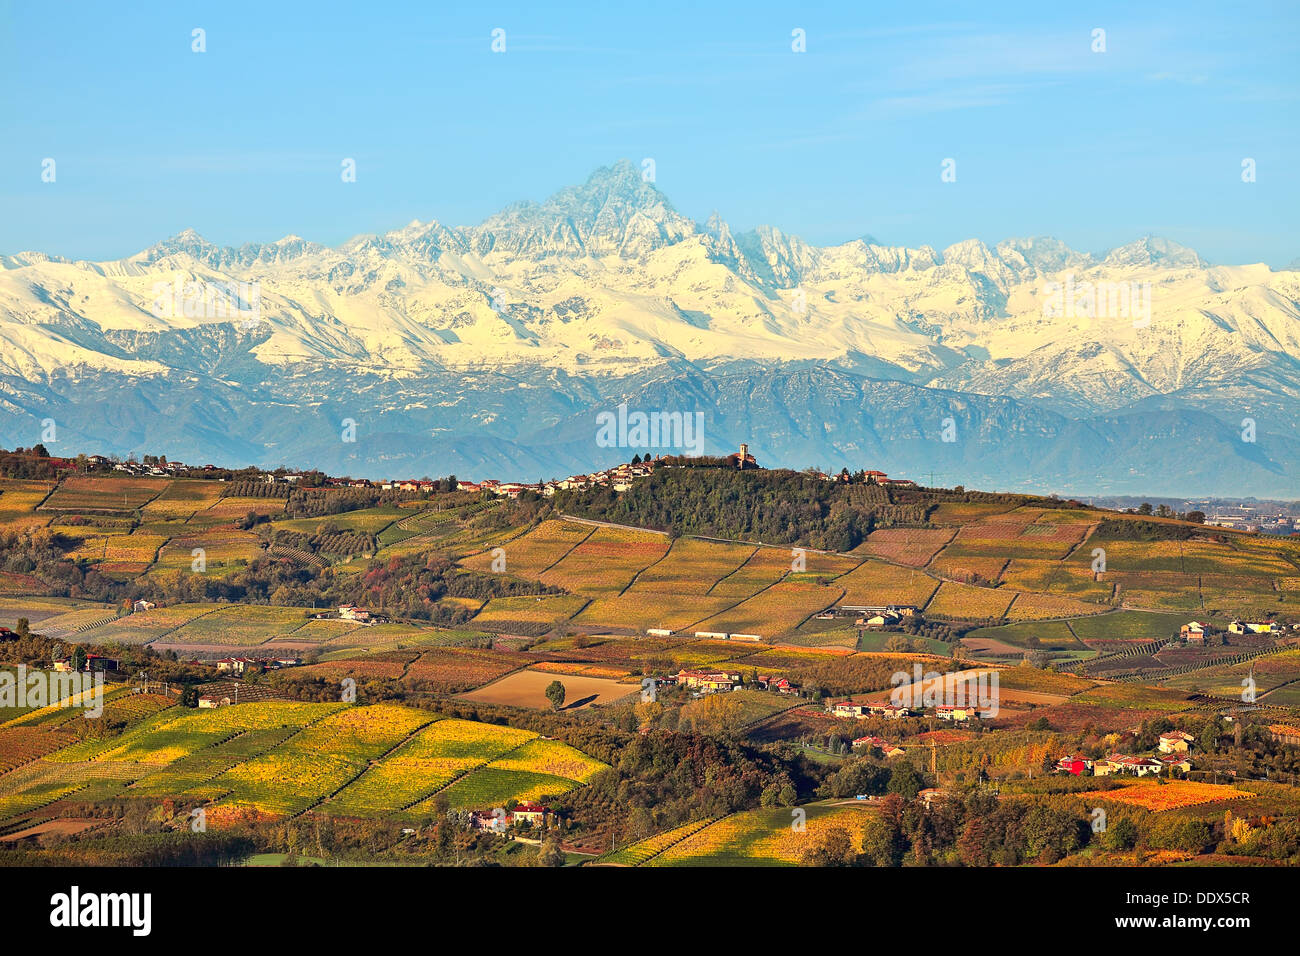 Vista otoñal de colinas con viñedos y picos montañosos nevados de fondo en el Piamonte, Norte de Italia. Foto de stock